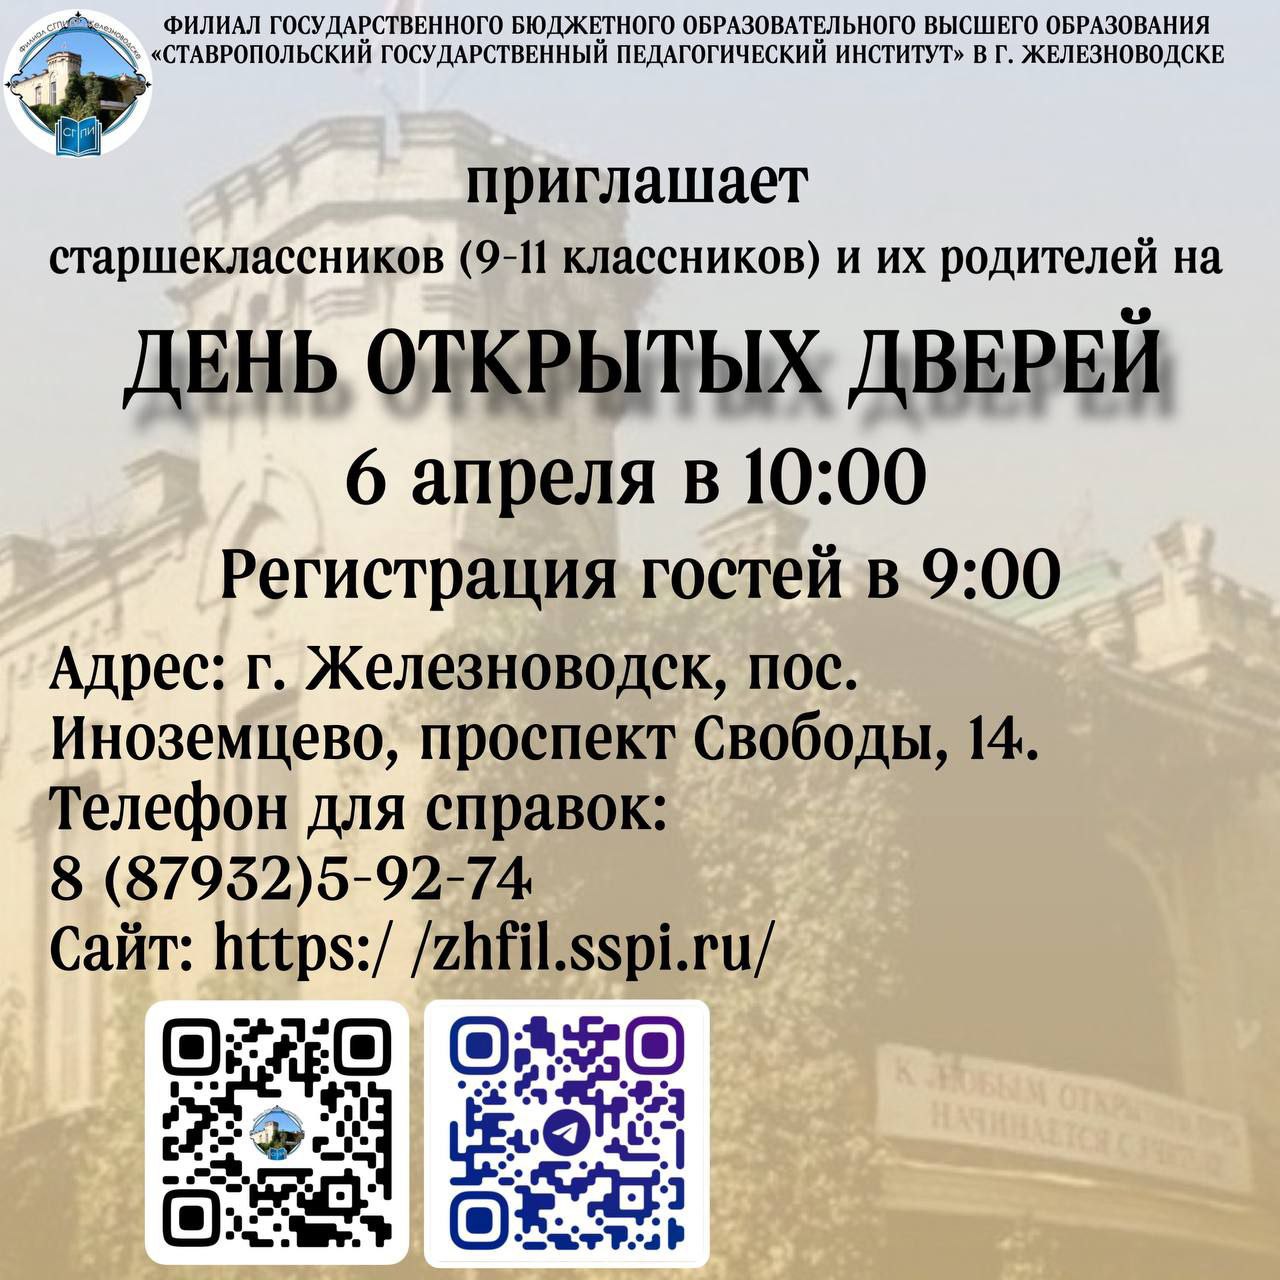 Филиал СГПИ в г .Железноводске приглашает на День открытых дверей!